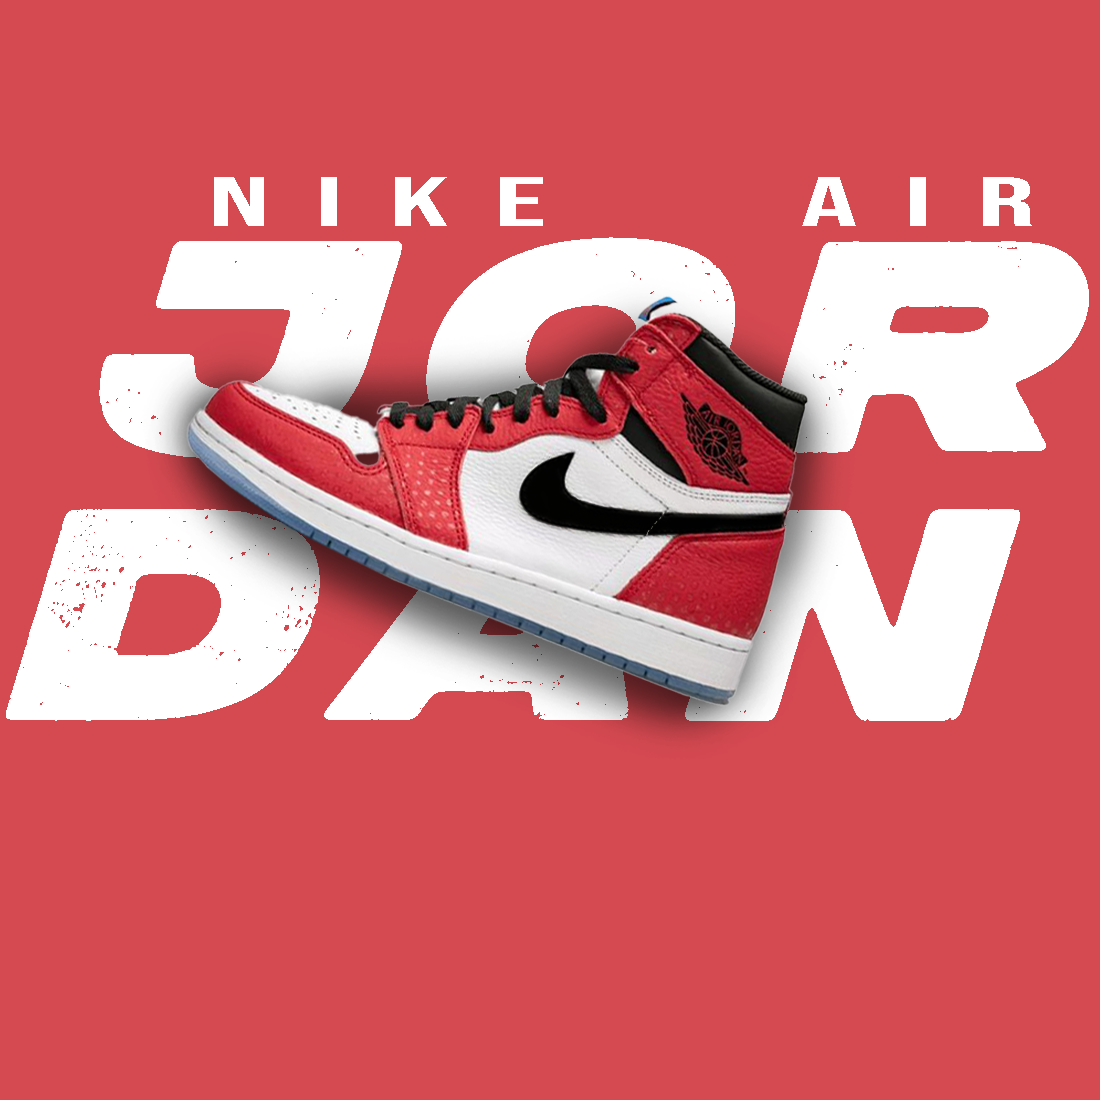 Nike Air Jordan 1 poster preview image.